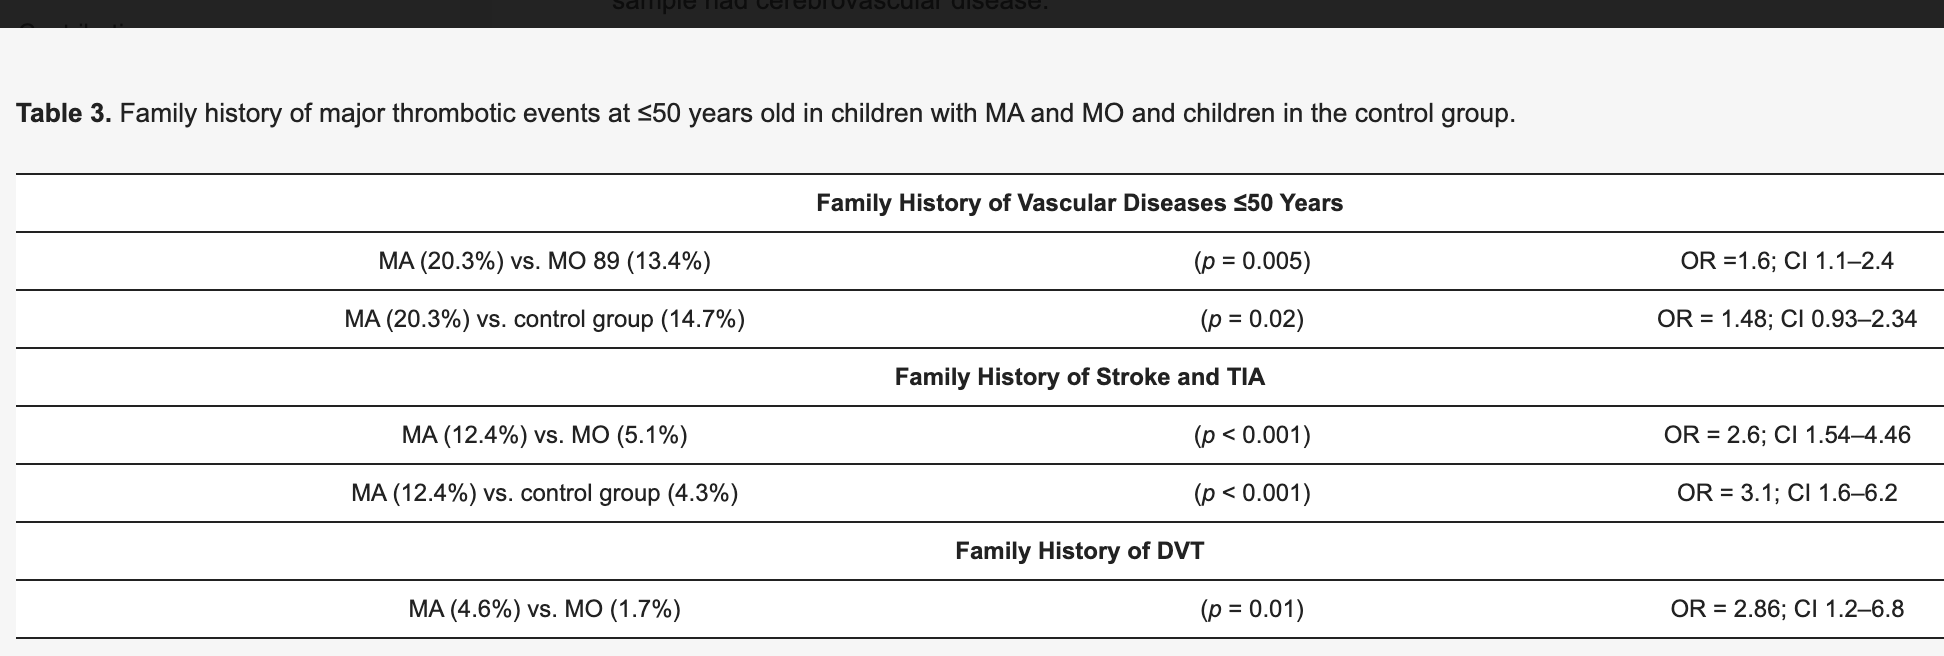 J Clin Med：<font color="red">偏头痛</font>儿童的心血管危险因素和主要血栓形成事件的家族史：一项为期 12 年的回顾性单中心研究